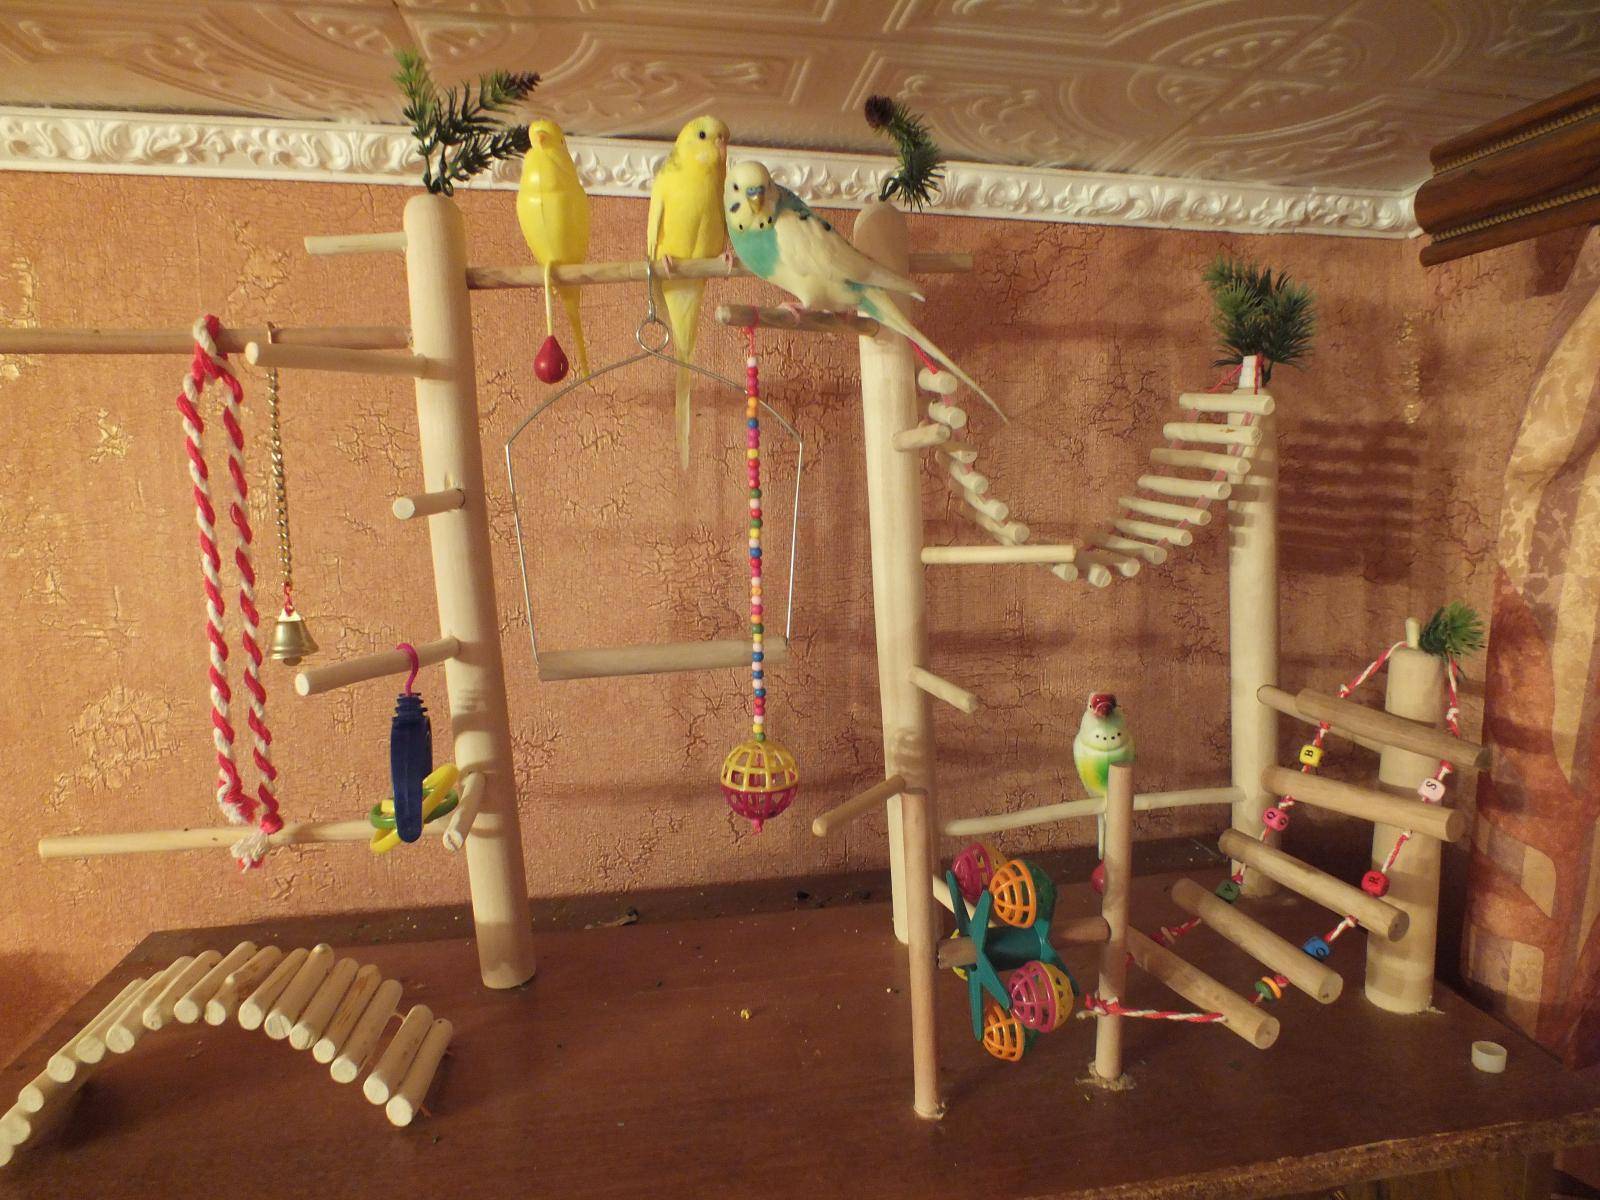 Как сделать игрушки для попугаев своими руками: лесенка, домик, качелька